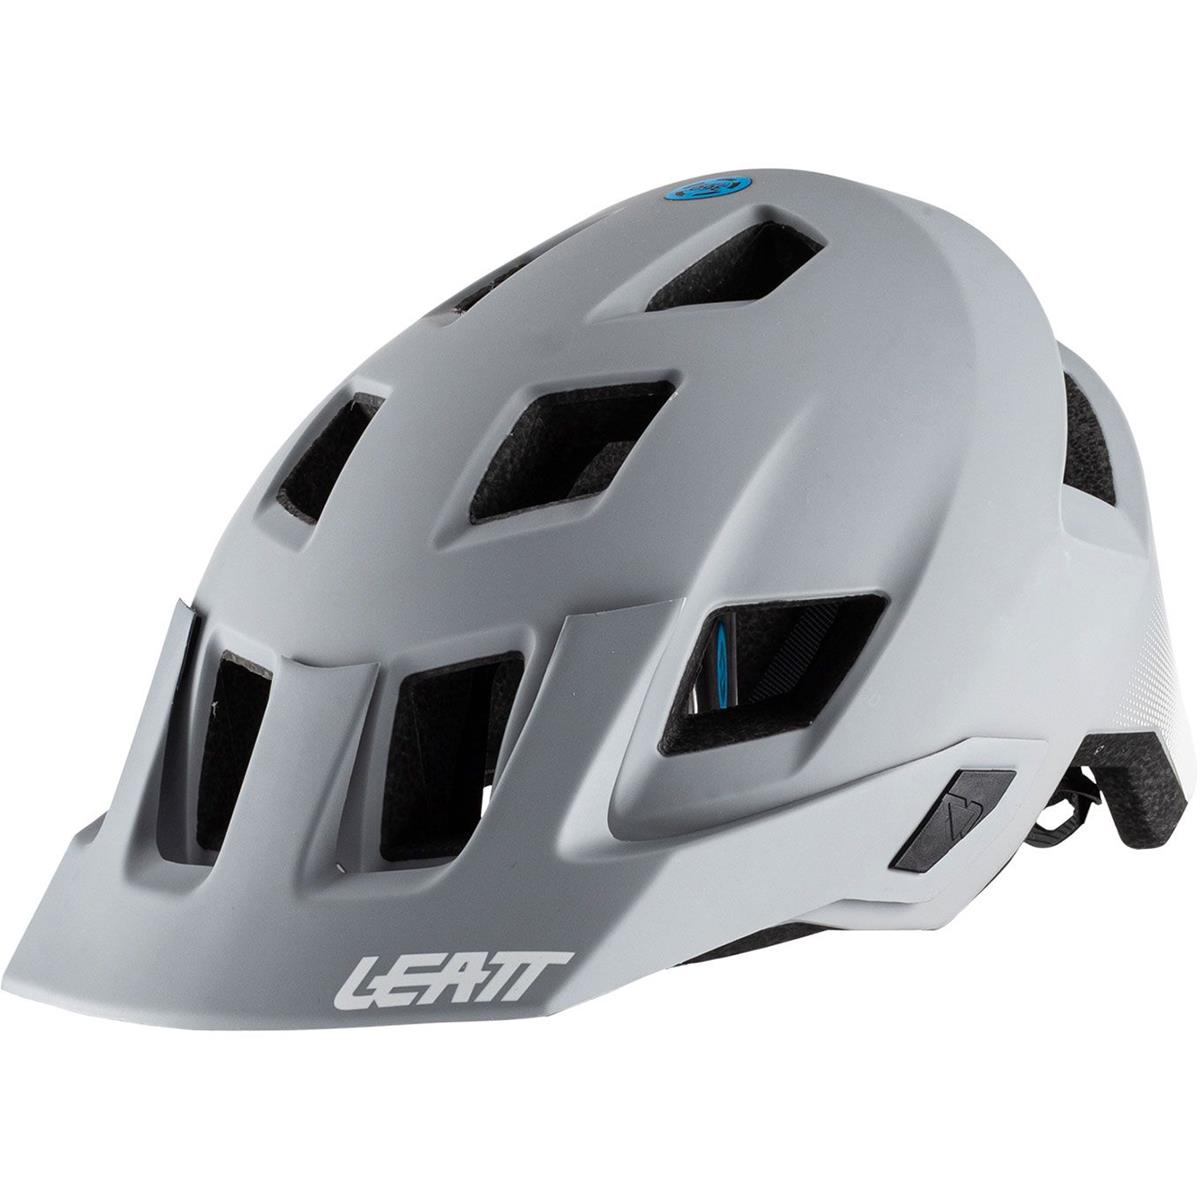 Leatt Enduro MTB Helmet 1.0 All Mountain Steel